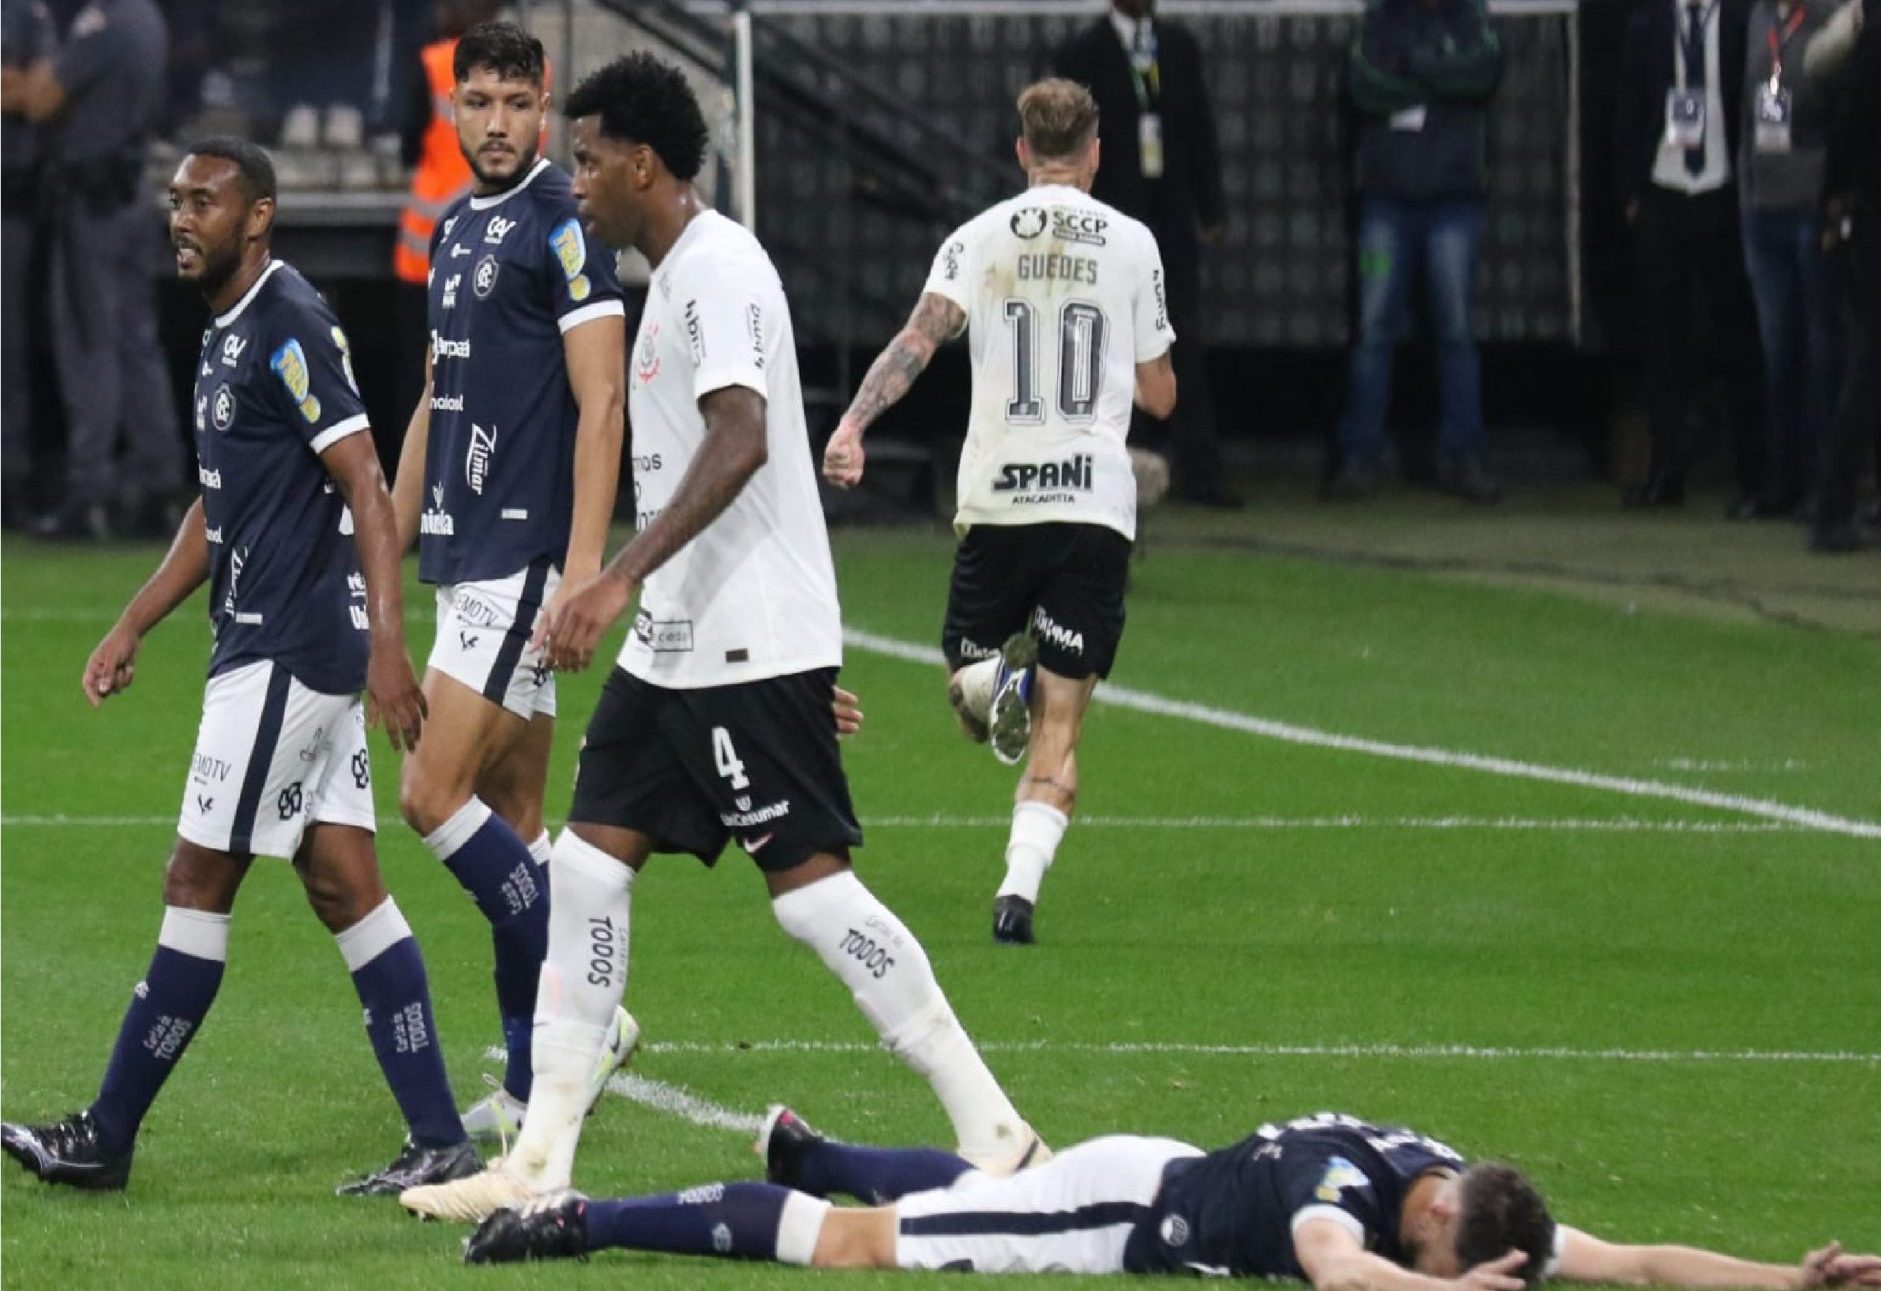 Corinthians busca reverter a situação atual do time levando a vitória. - Foto: Reprodução/José Manoel Idalgo/Twitter @Corinthians